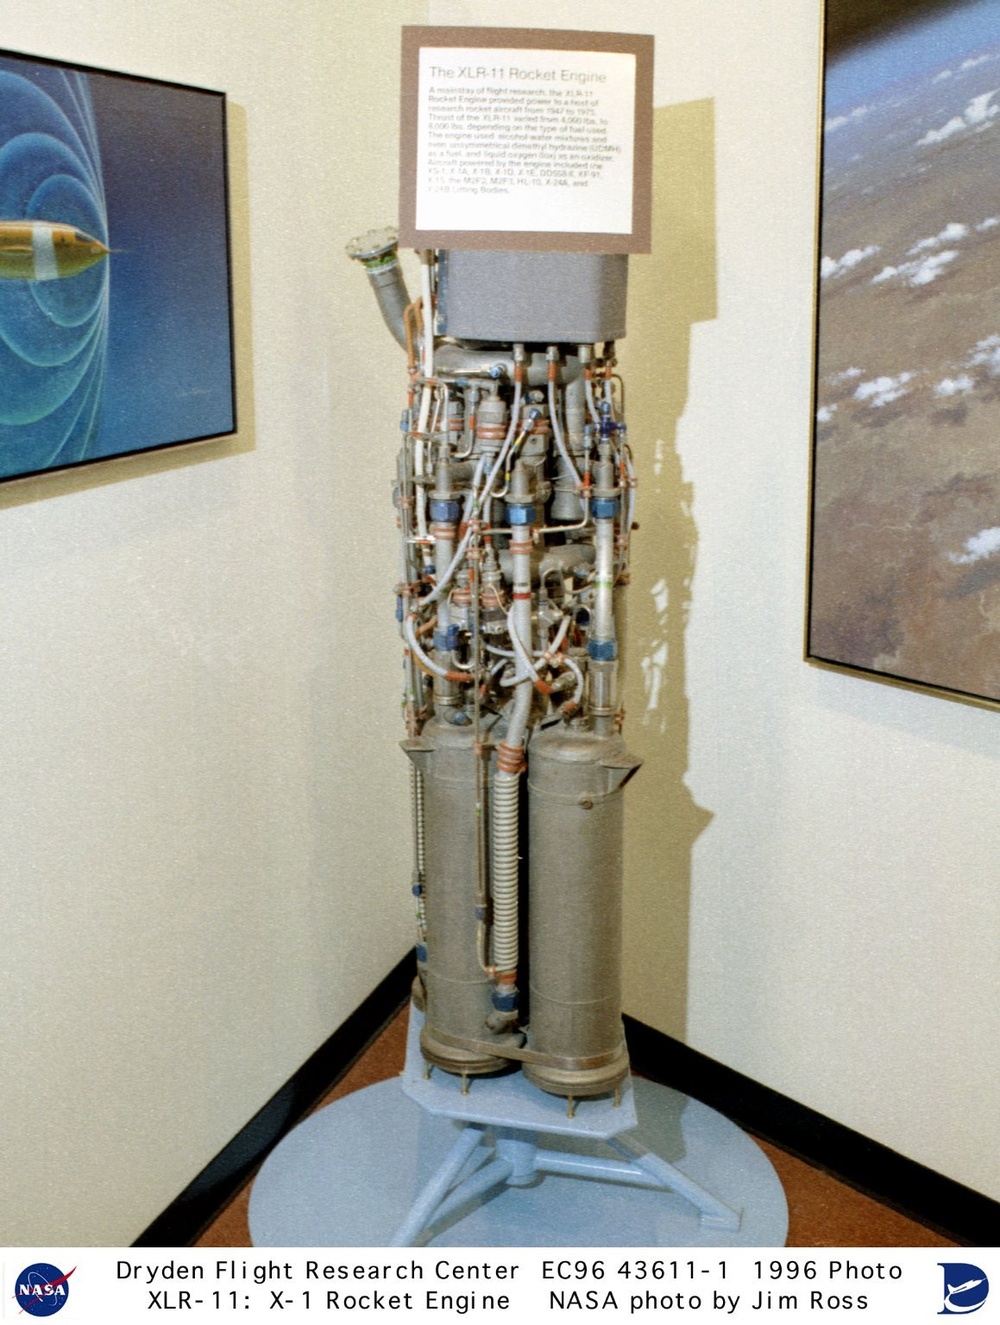 XLR-11 - X-1 rocket engine display